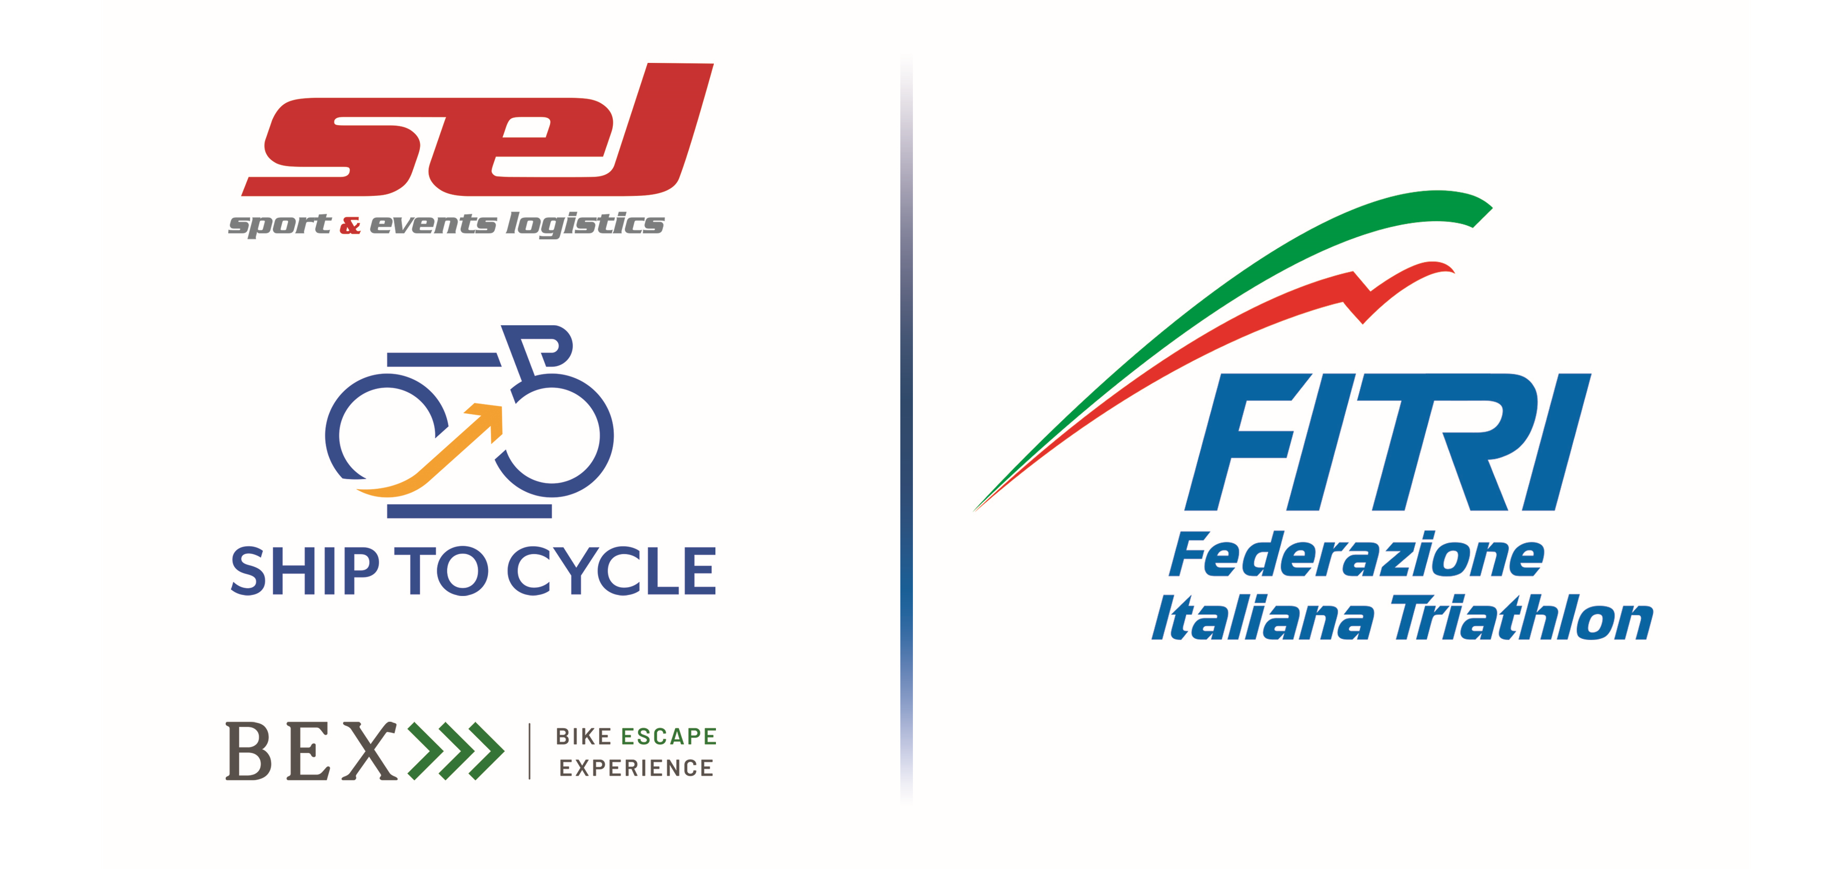 La Federazione Italiana Triathlon e SEL, logistica d’eccellenza al servizio del Triathlon